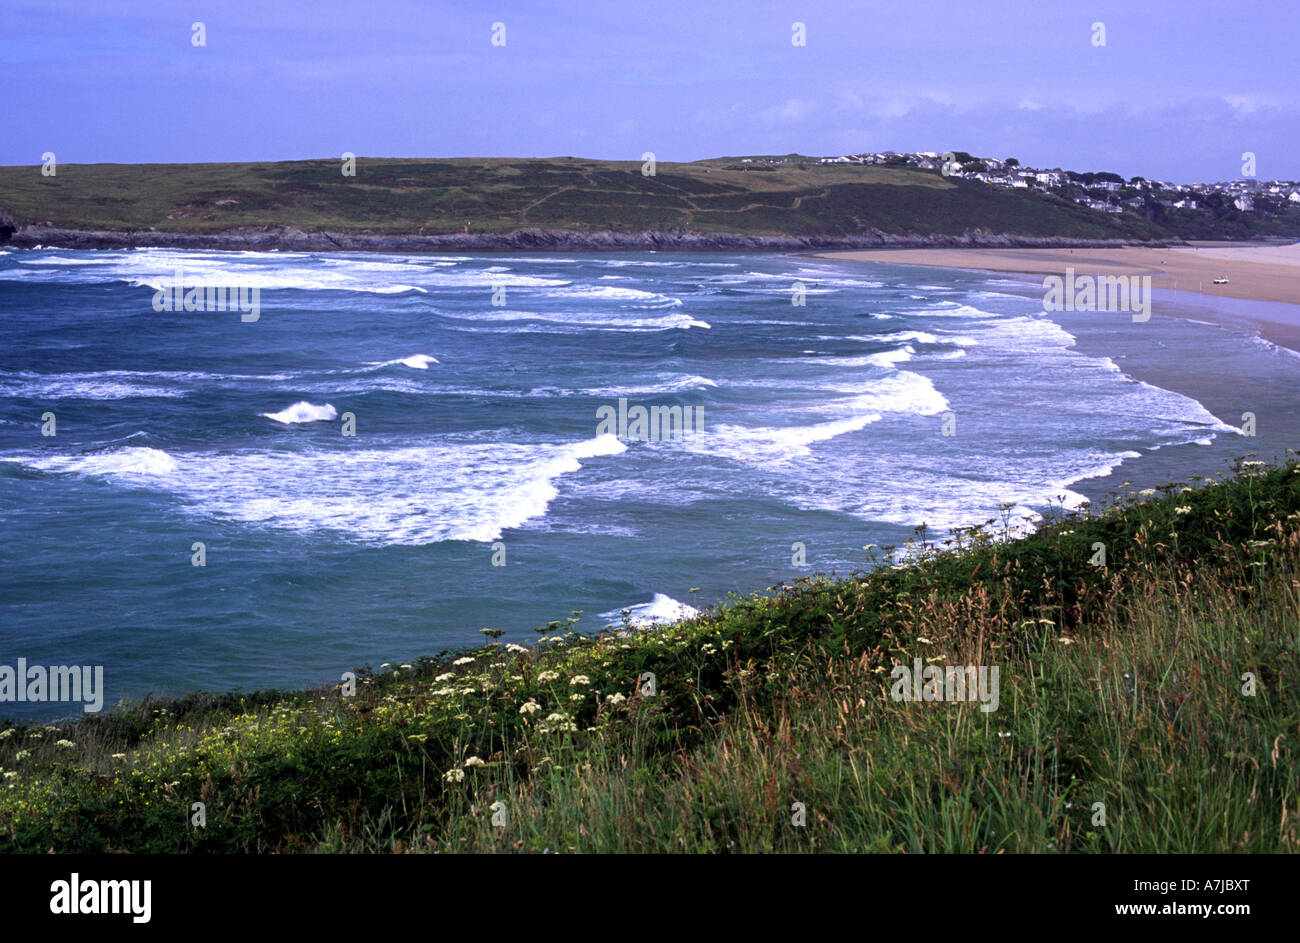 Les vagues de l'Atlantique sur la plage de Crantock, Cornwall Banque D'Images